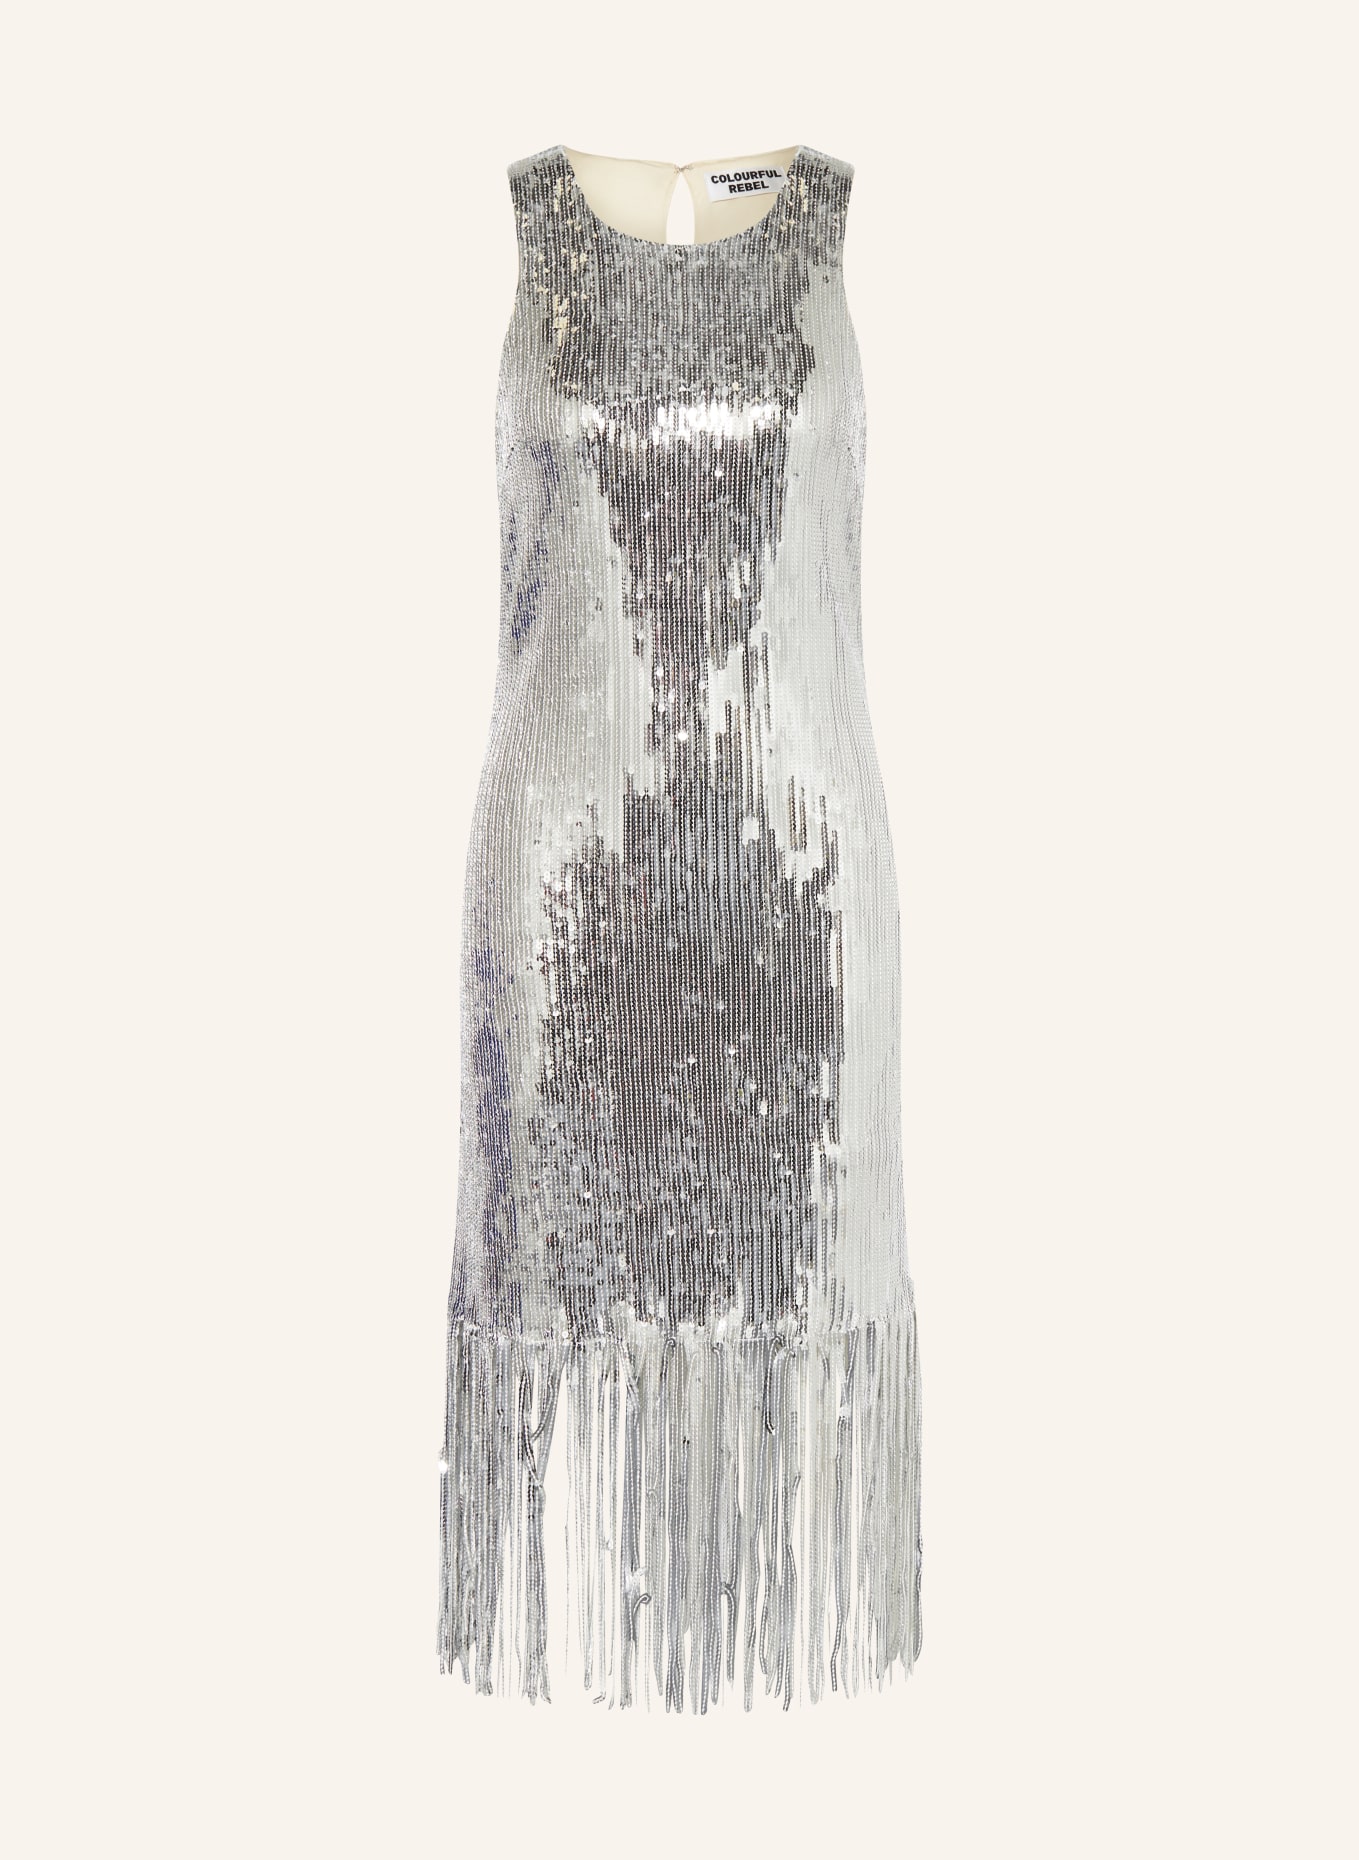 COLOURFUL REBEL Kleid MASE mit Pailletten, Farbe: SILBER (Bild 1)